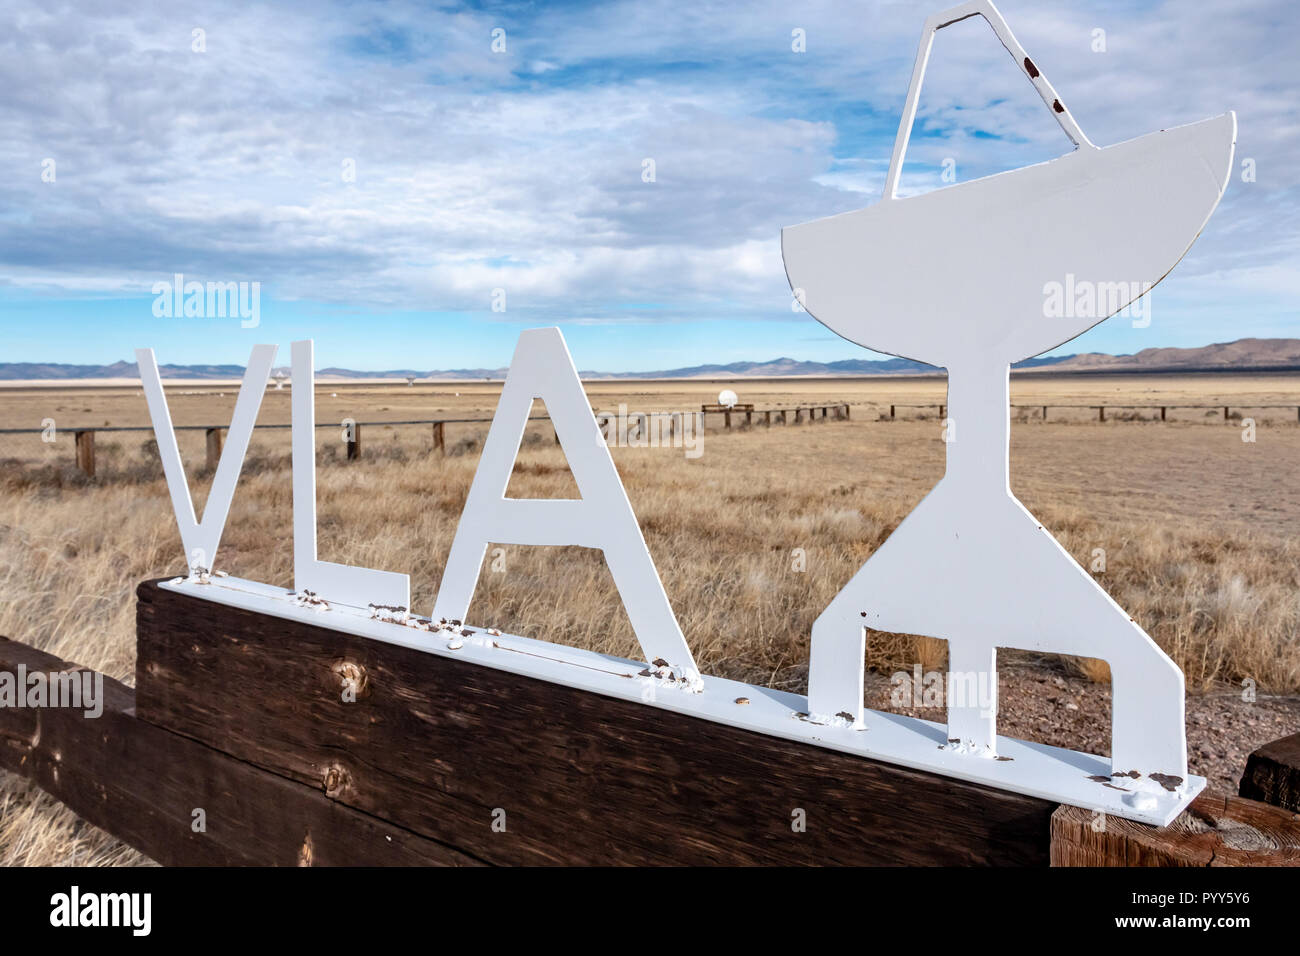 Very Large Array (VLA) Radio Telescopes in New Mexico, USA Stock Photo